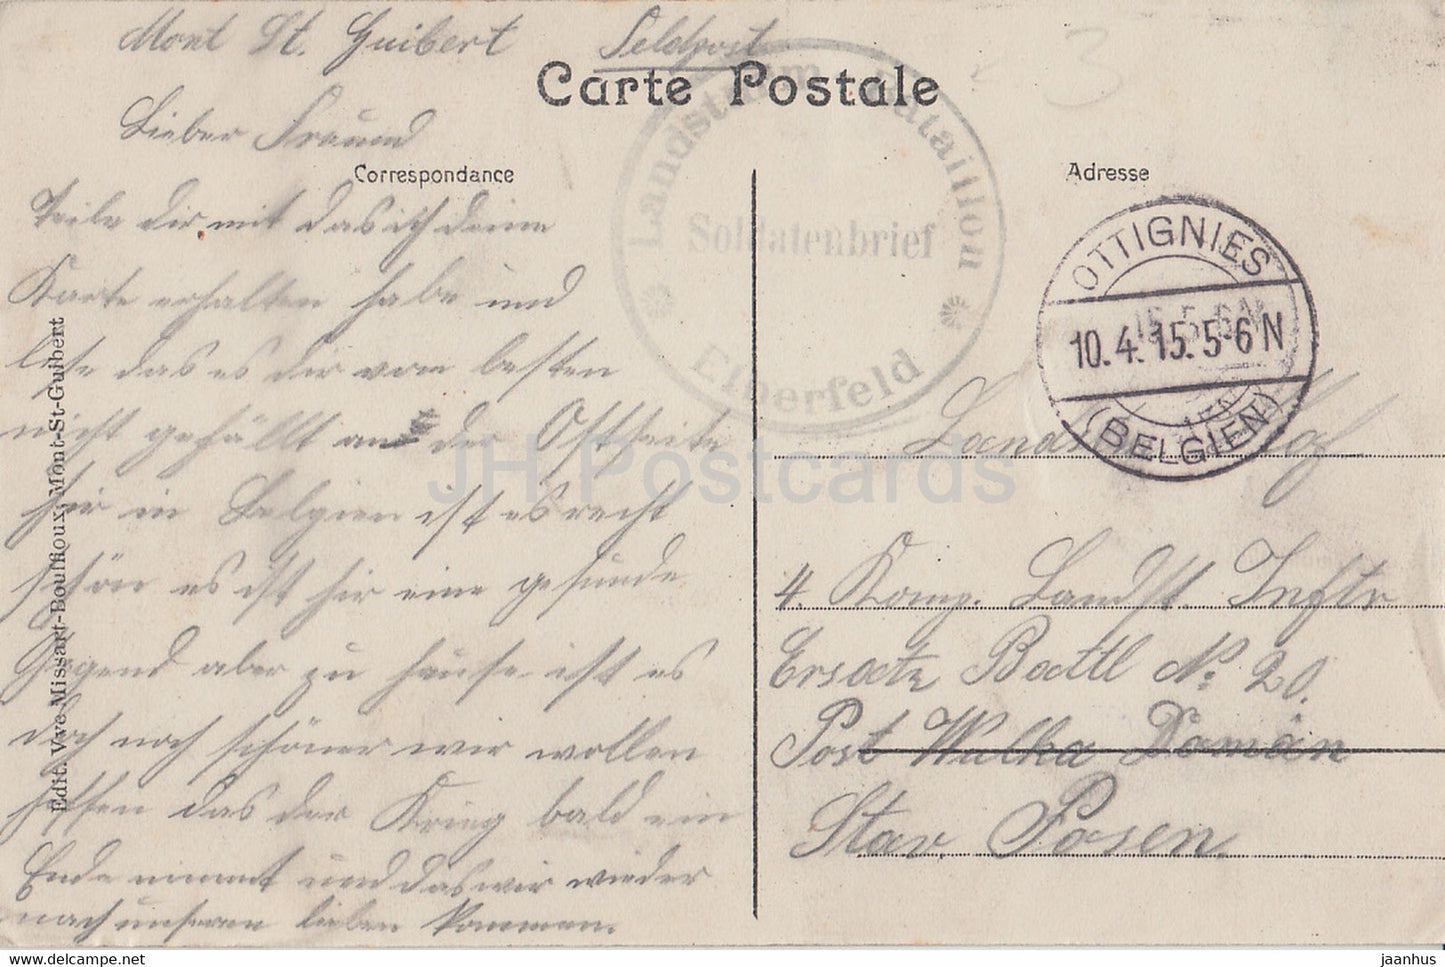 Mont St Guibert - Etang du Château de Bierbais - château - Landsturm - Feldpost - carte postale ancienne - 1915 - Belgique - utilisé